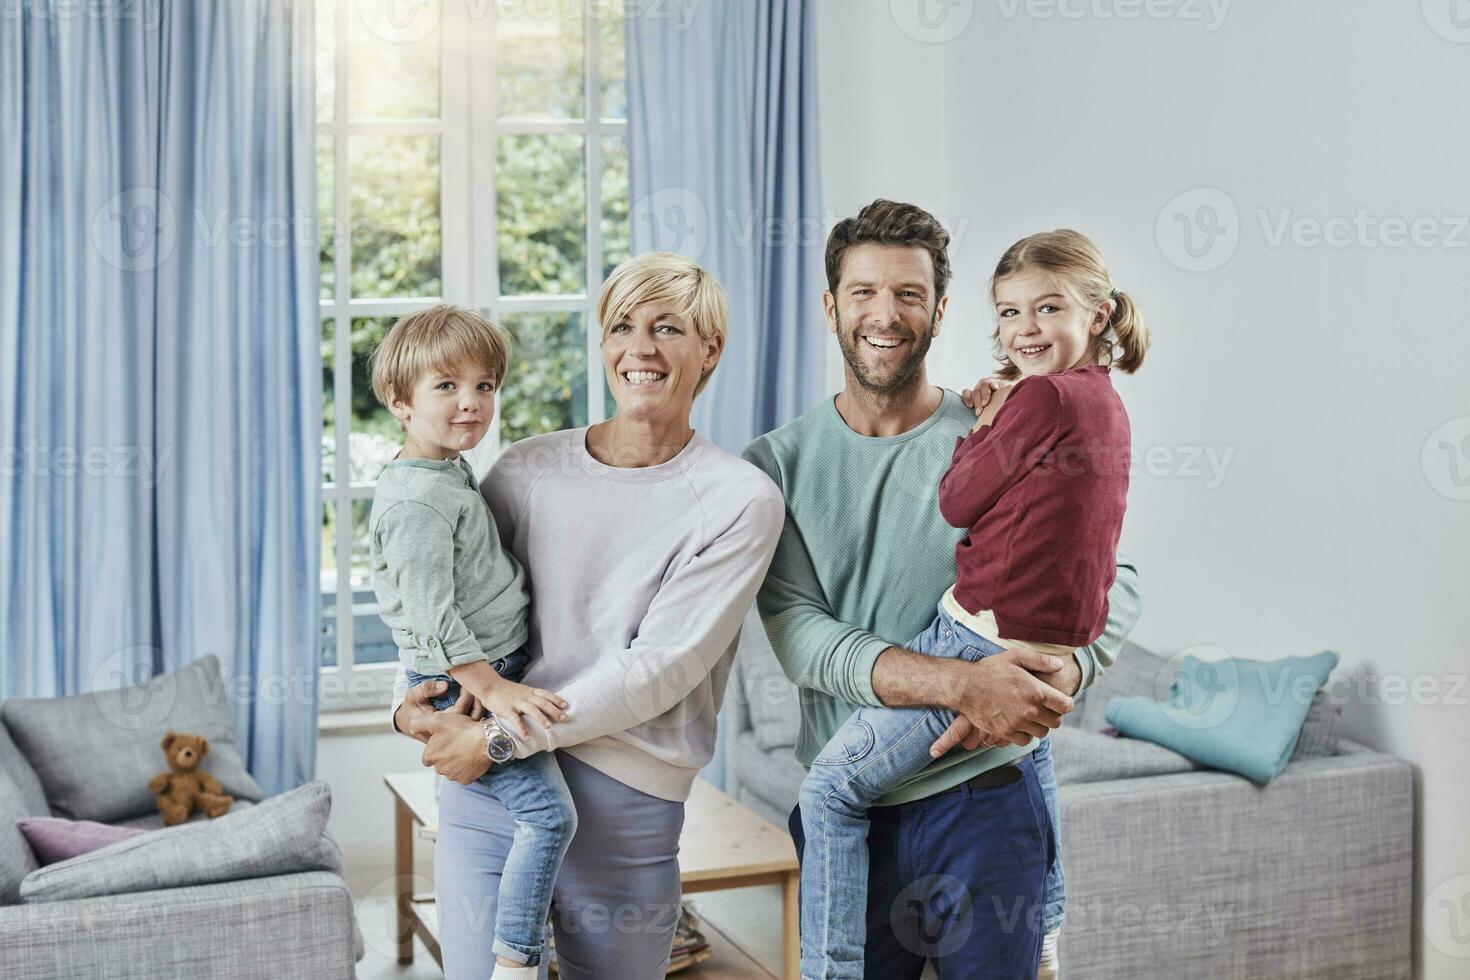 portrait de content famille avec deux des gamins à Accueil photo